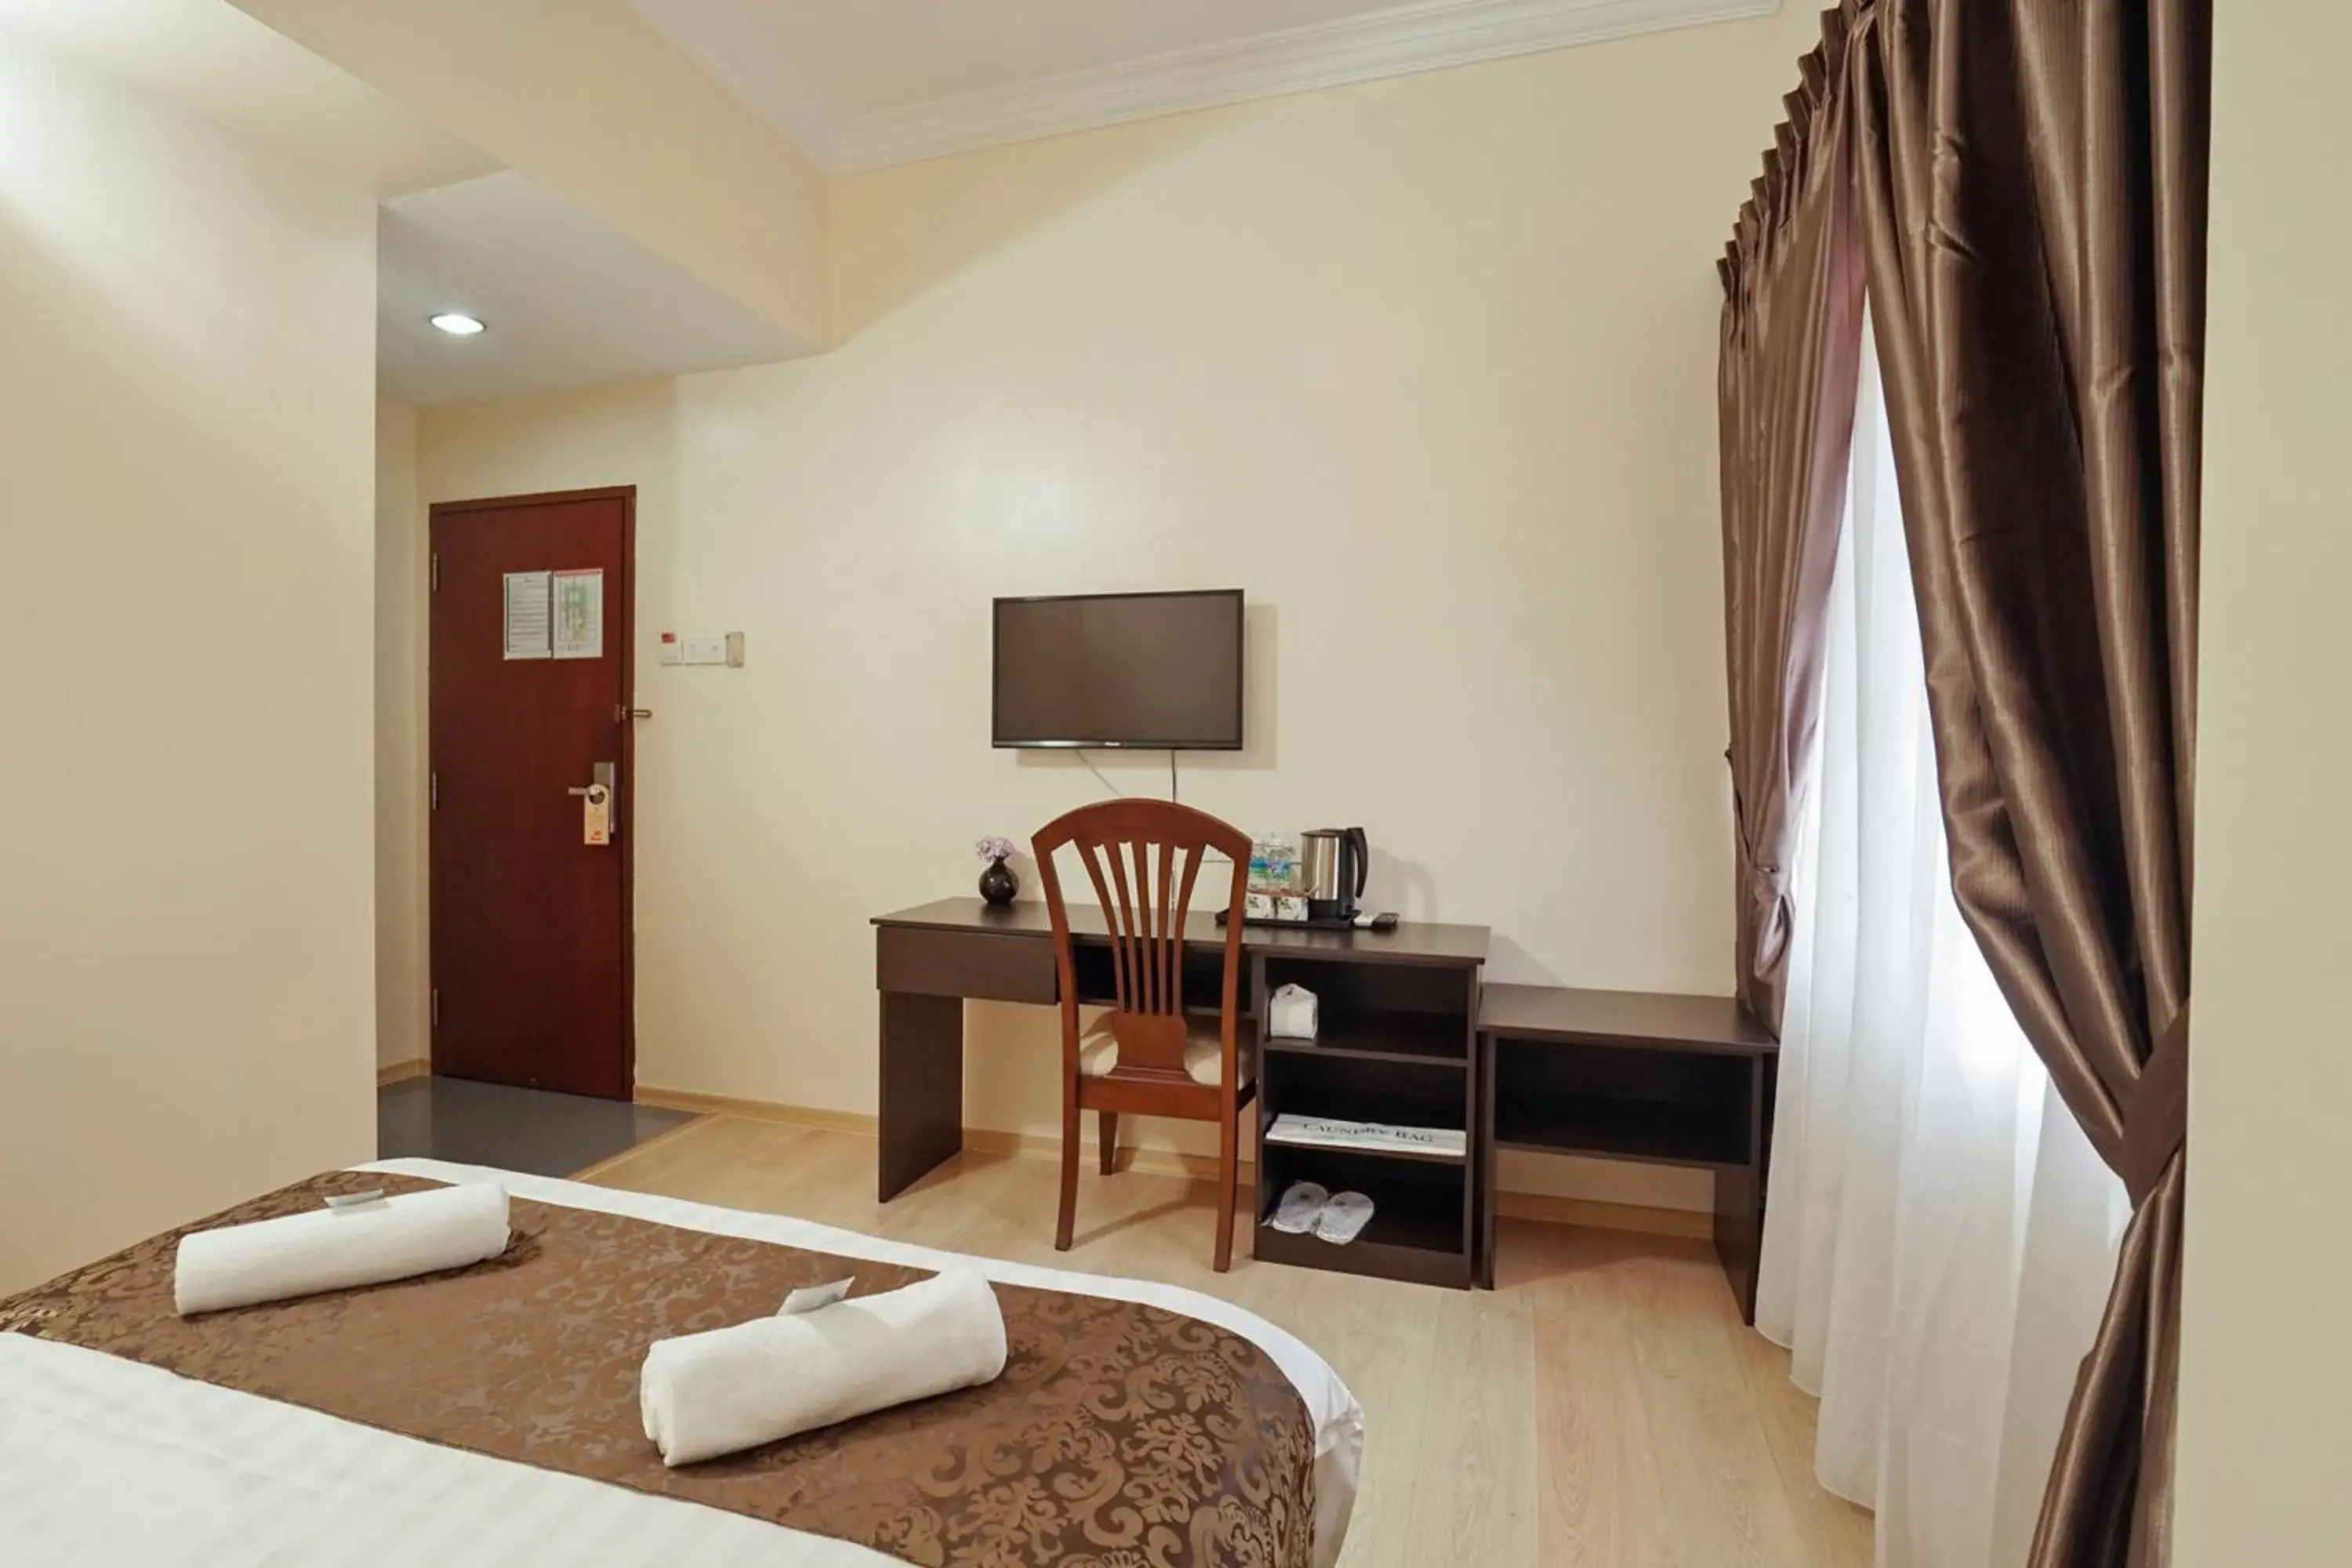 Bedroom, TV/Entertainment Center in RJ Hotel Kulai